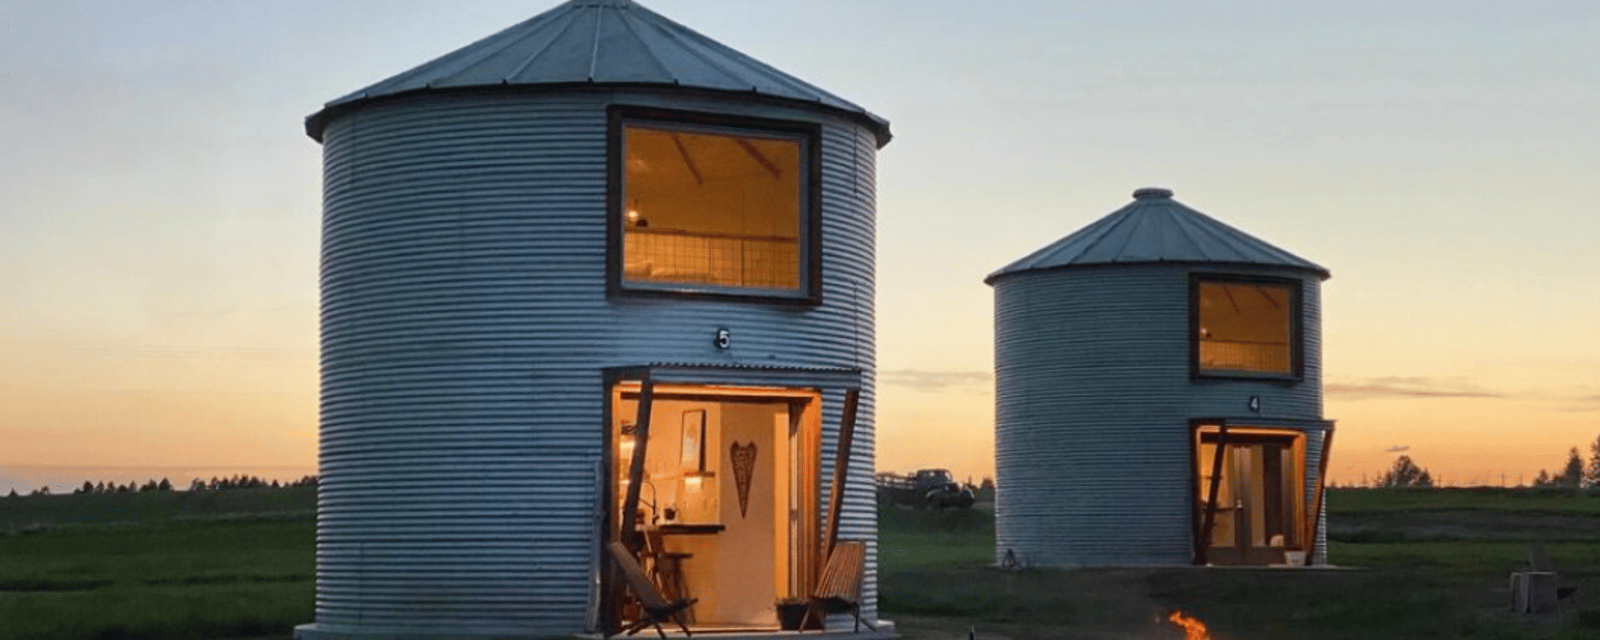 Un silo métamorphosé en magnifique petite maison